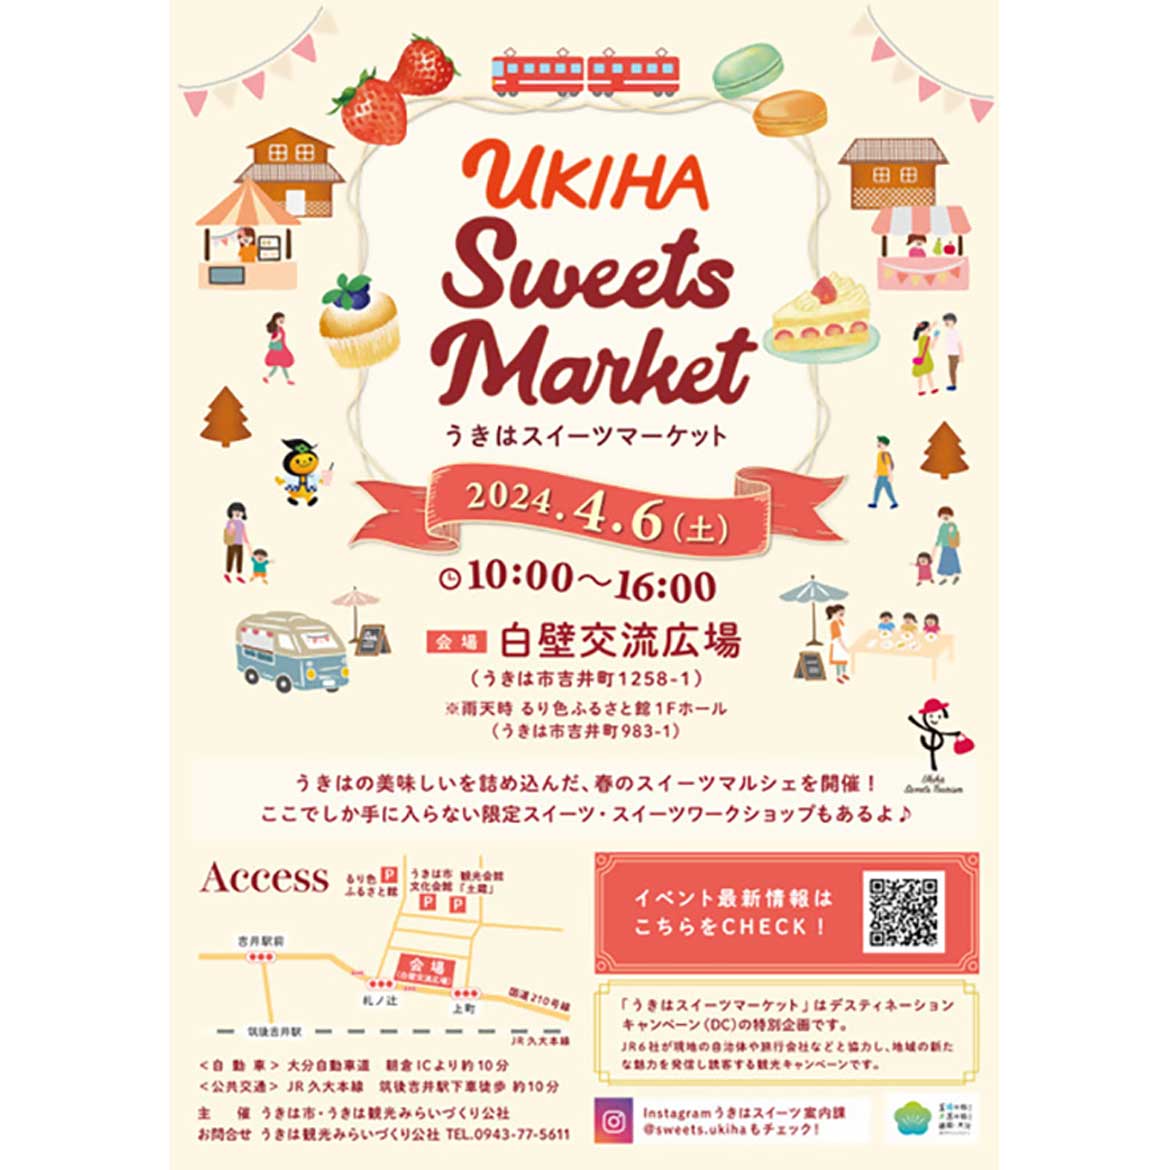 福岡県うきは市の春のスイーツマルシェ「UKIHA Sweets Market（うきはスイーツマーケット）」開催